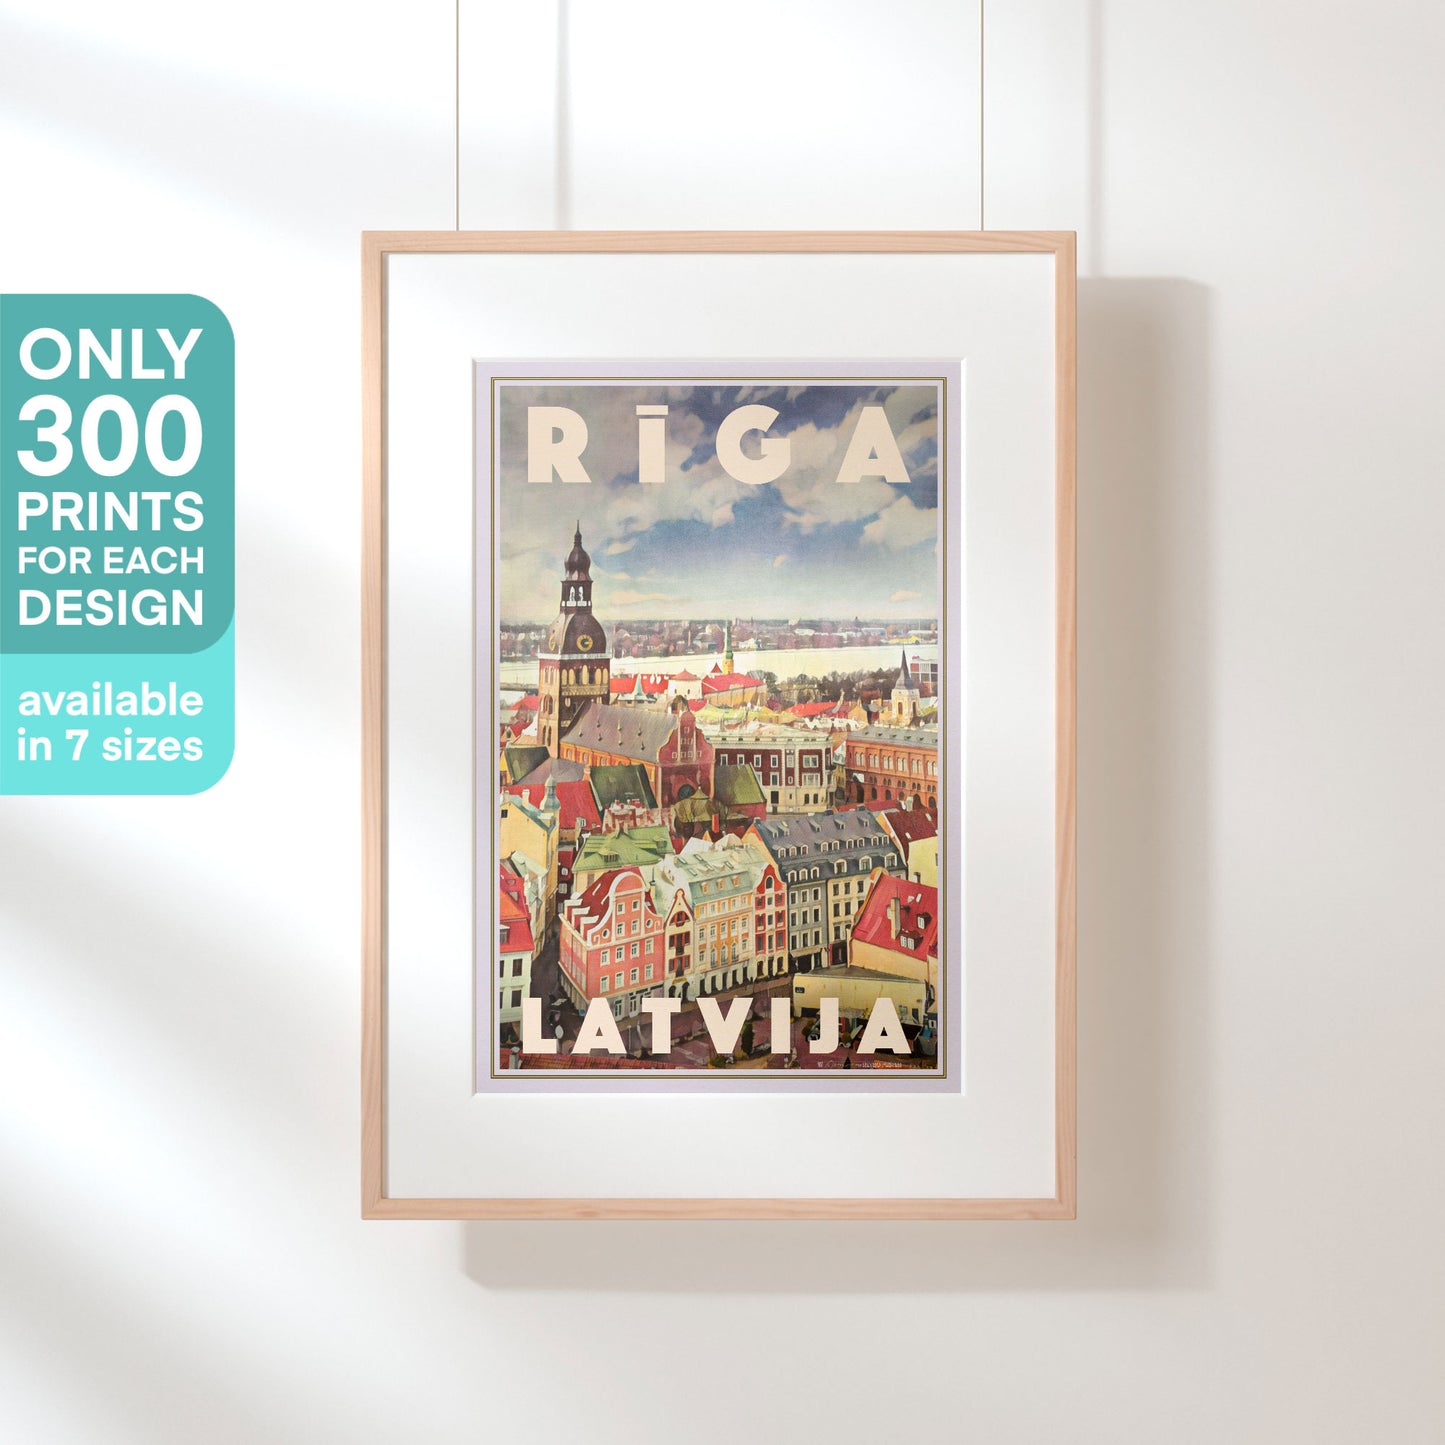 Limited Edition Latvia Travel Poster of Riga | Riga Latvija by Alecse